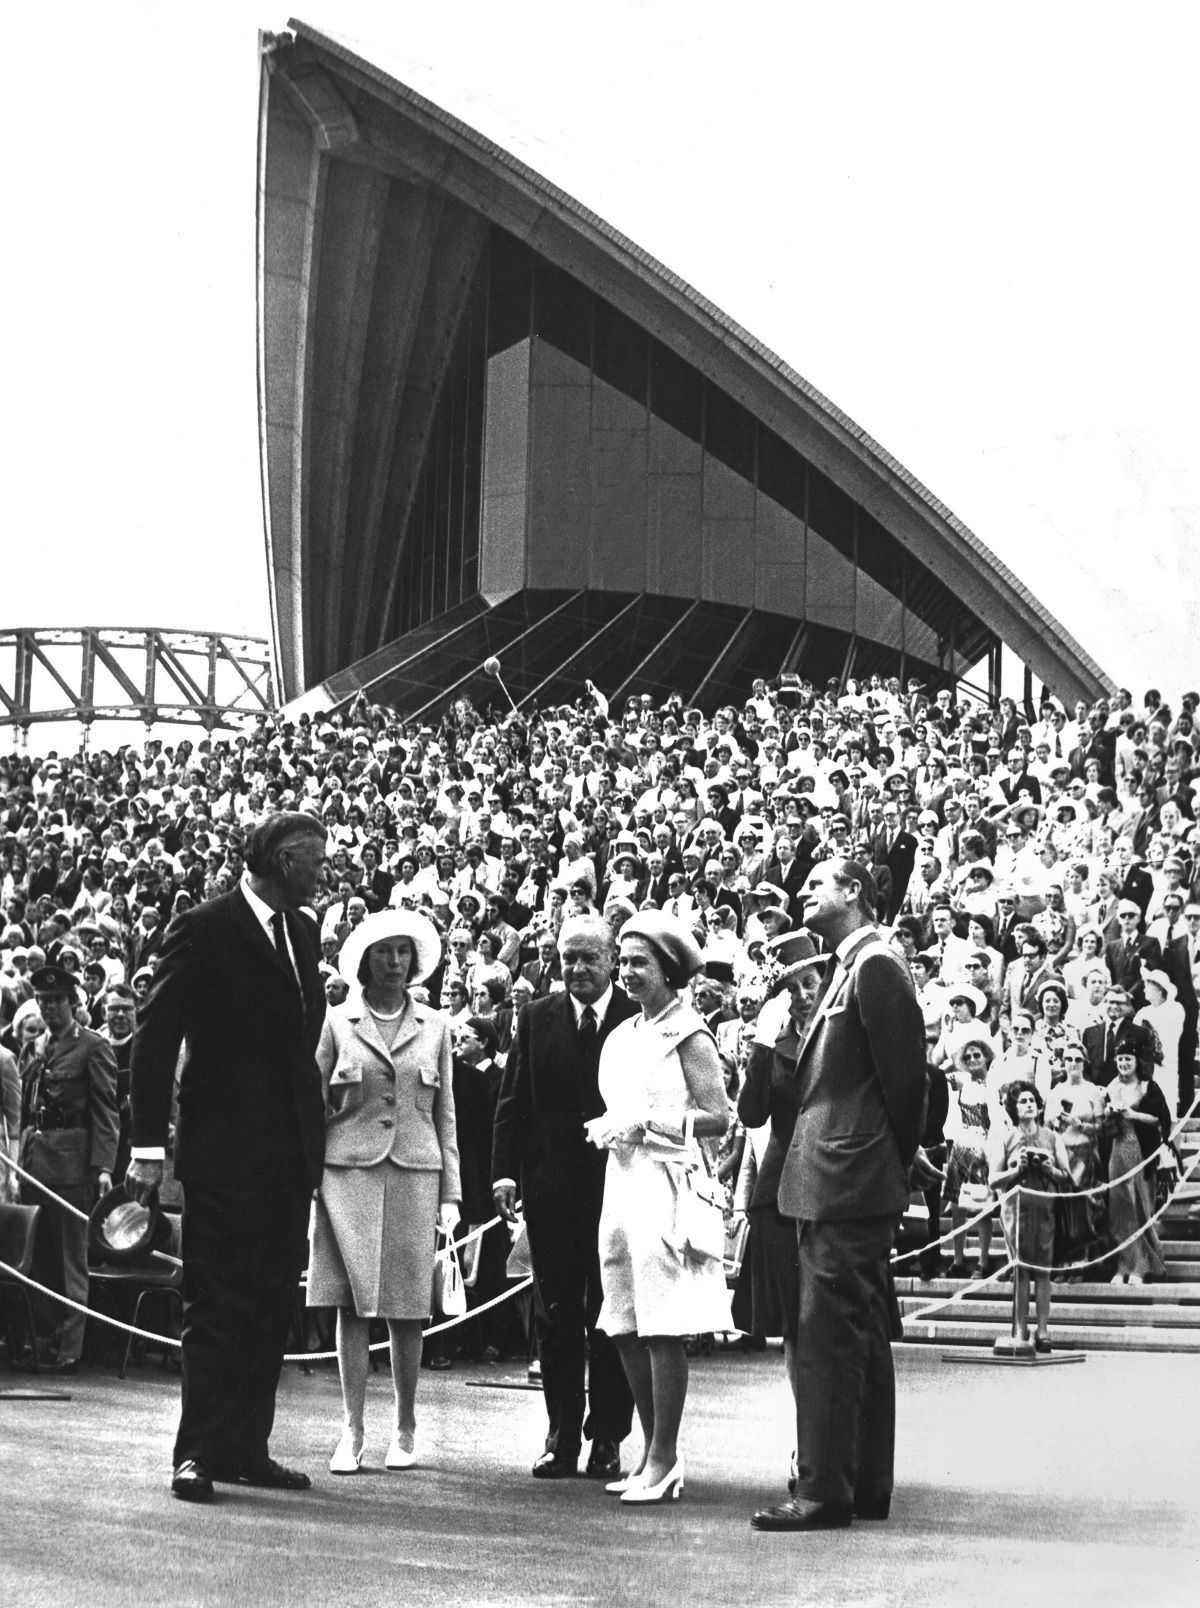 Sir Roden és Lady Cutler, valamint Sir Robert és Lady Askin II. Erzsébet királynővel és az Edinburgh-i herceggel az Operaház megnyitásakor, 1973. október 20-án.